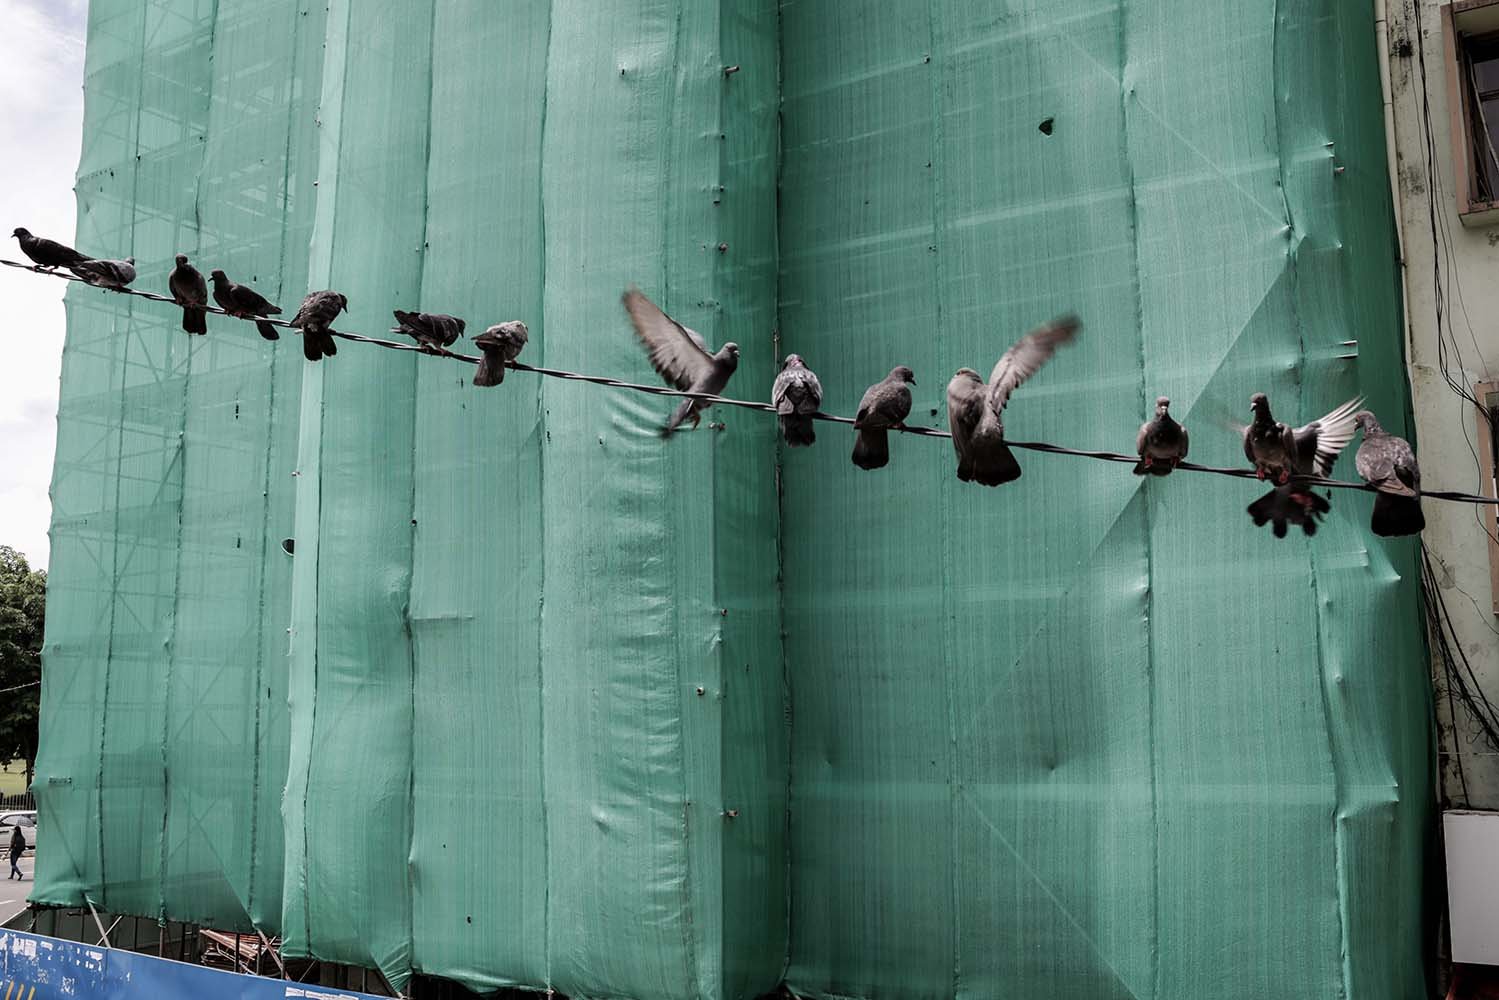 Burung-burung merpati hinggap di antara proyek pembangunan gedung di pusat kota Yangon, Myanmar. Perlahan-lahan investor mulai menanamkan investasinya di sejumlah proyek infrastruktur.